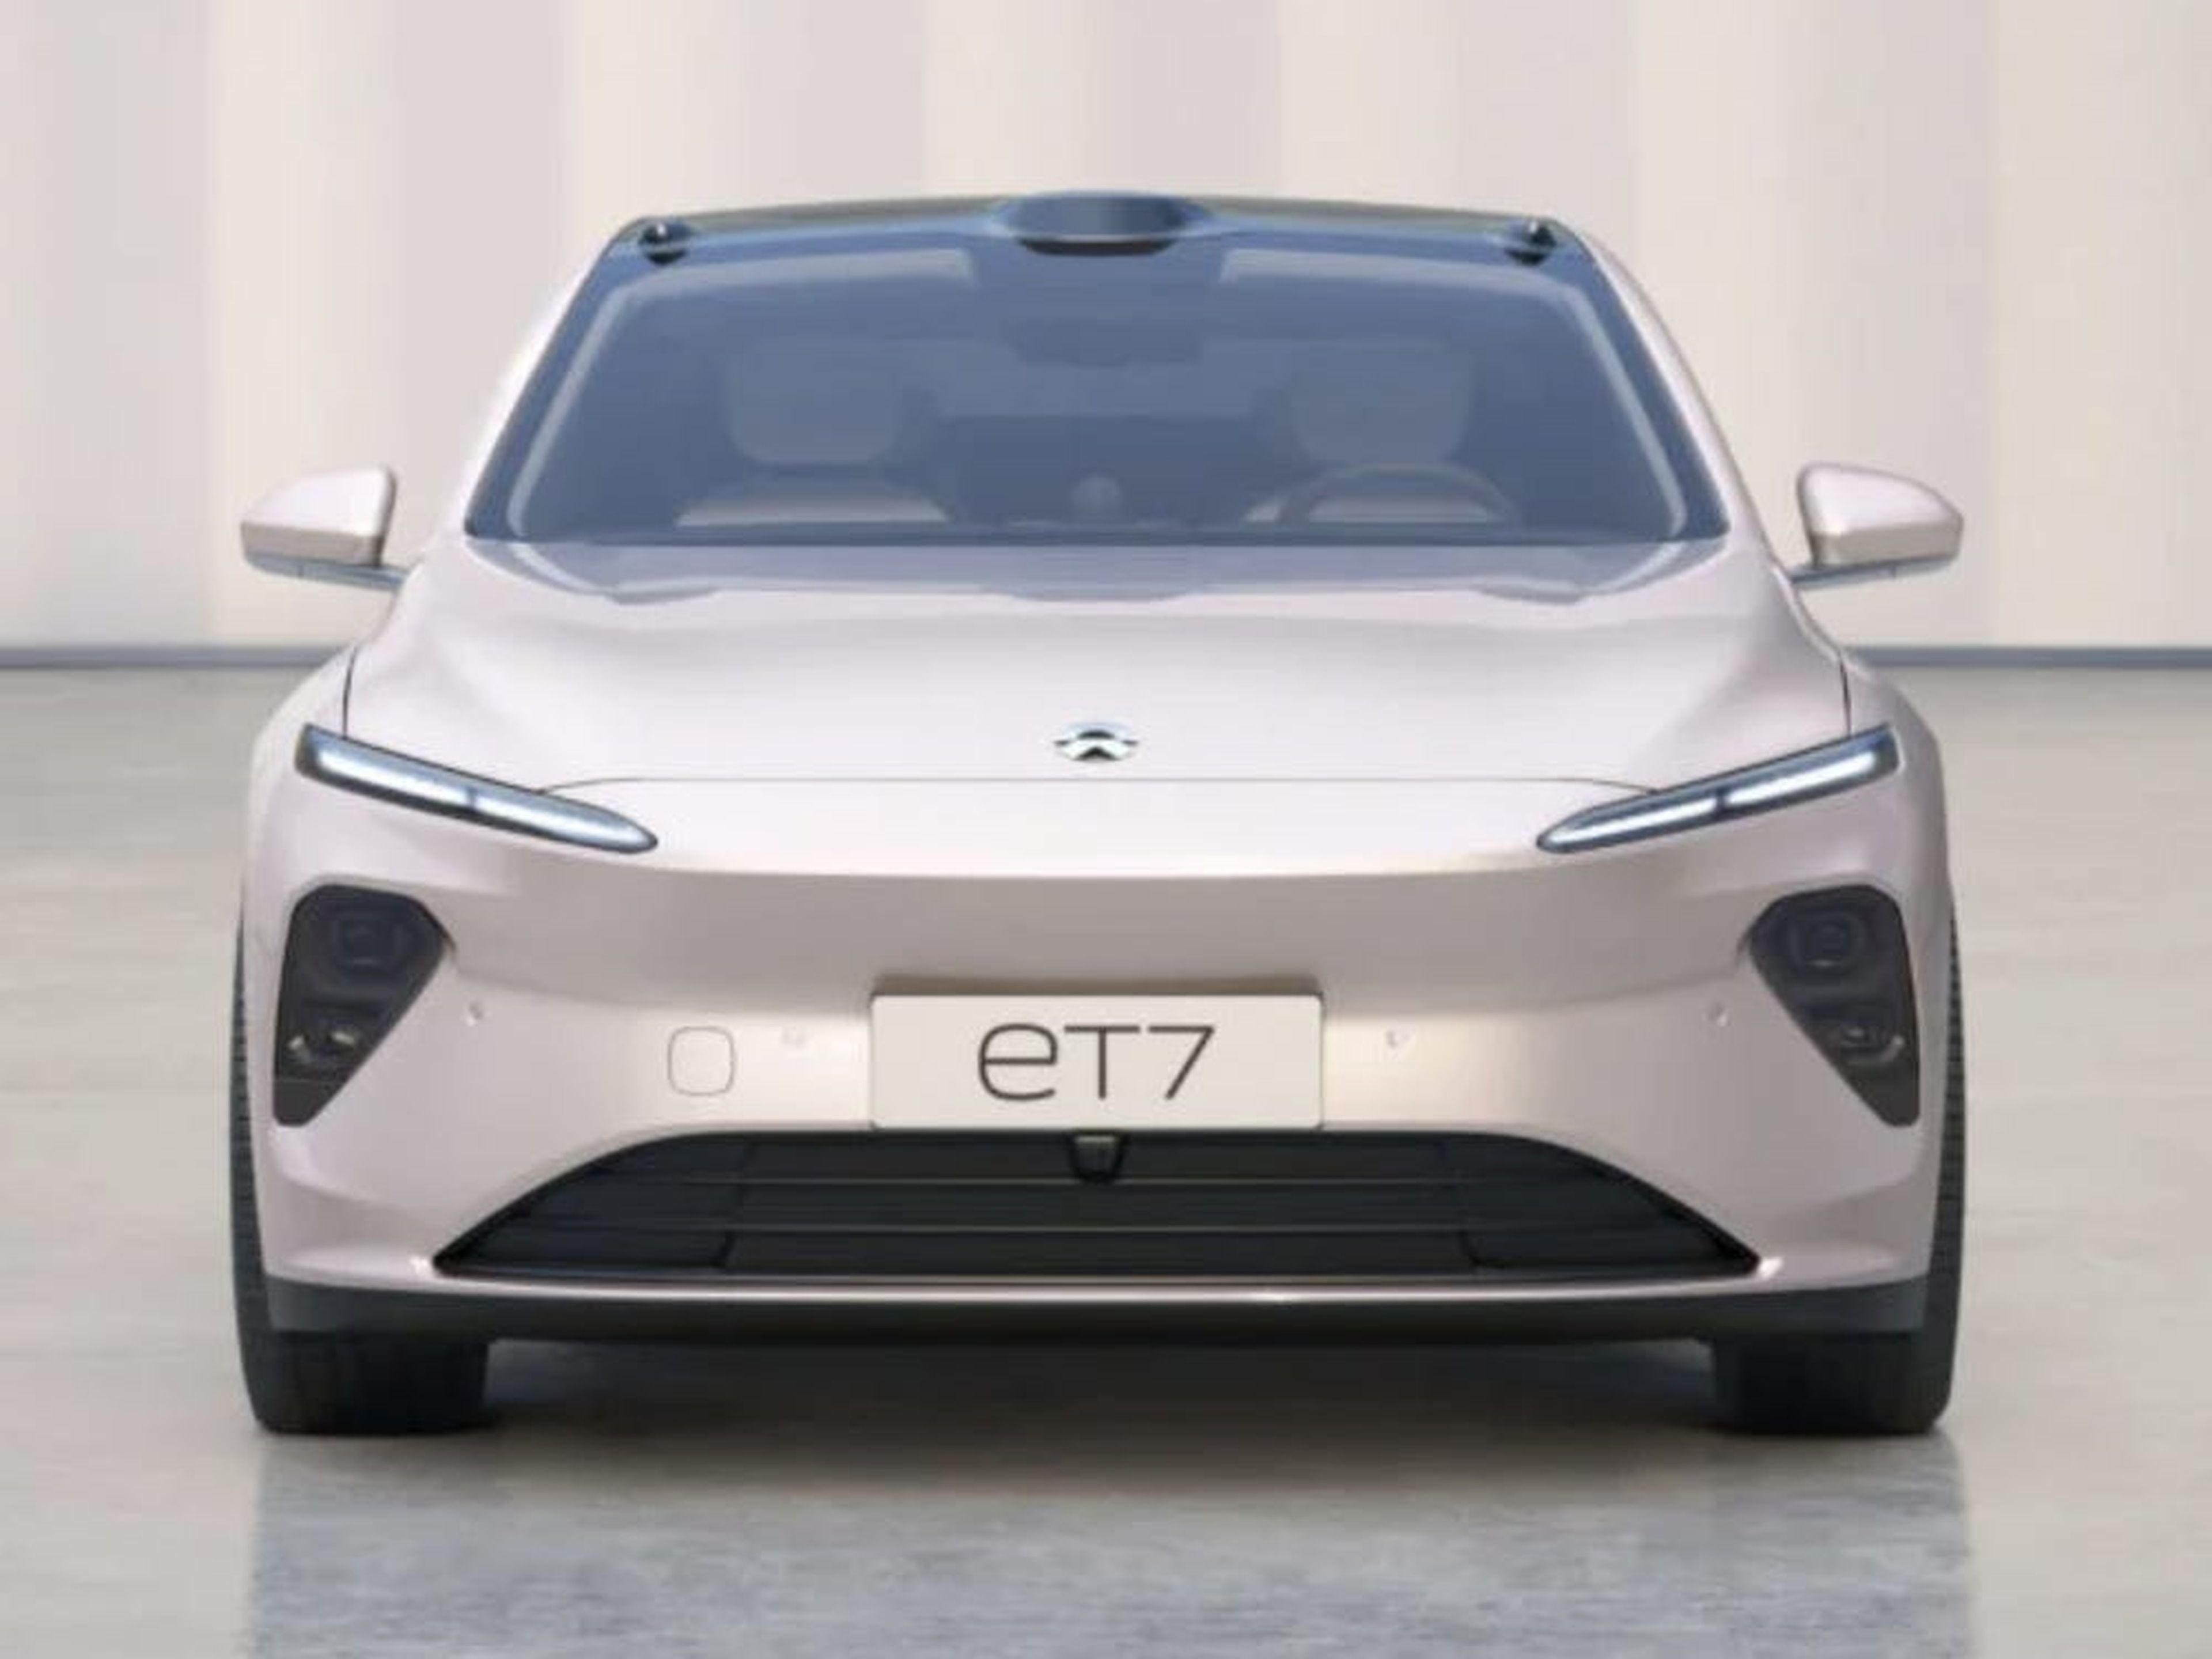 El Nio ET7 es considerado "la respuesta china a Tesla" por su innovador diseño.